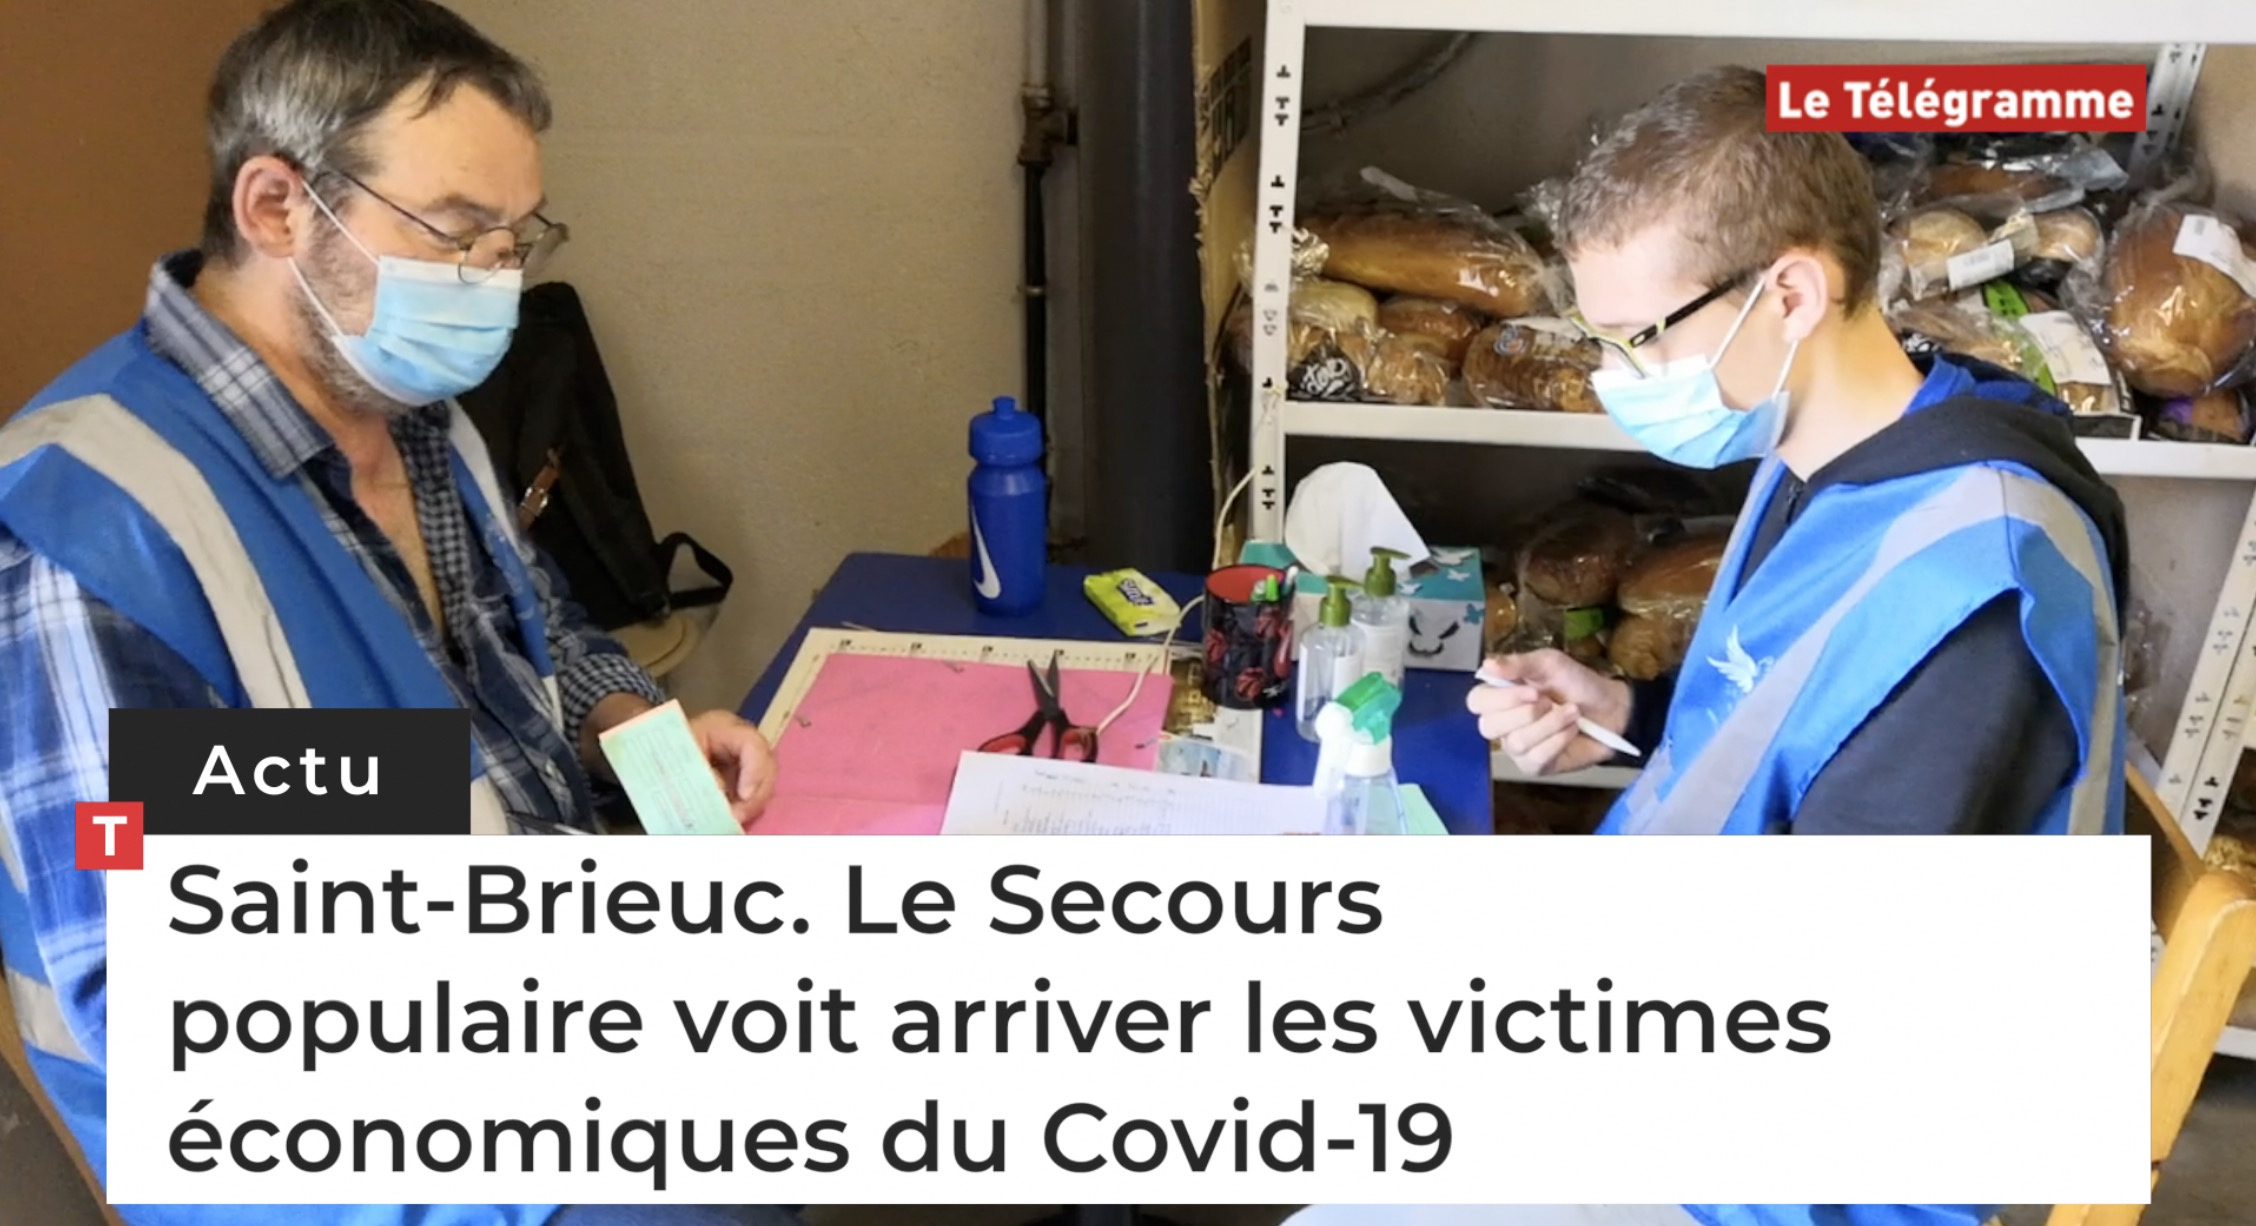 Saint-Brieuc. Le Secours populaire voit arriver les victimes économiques du Covid-19 (Le Télégramme)